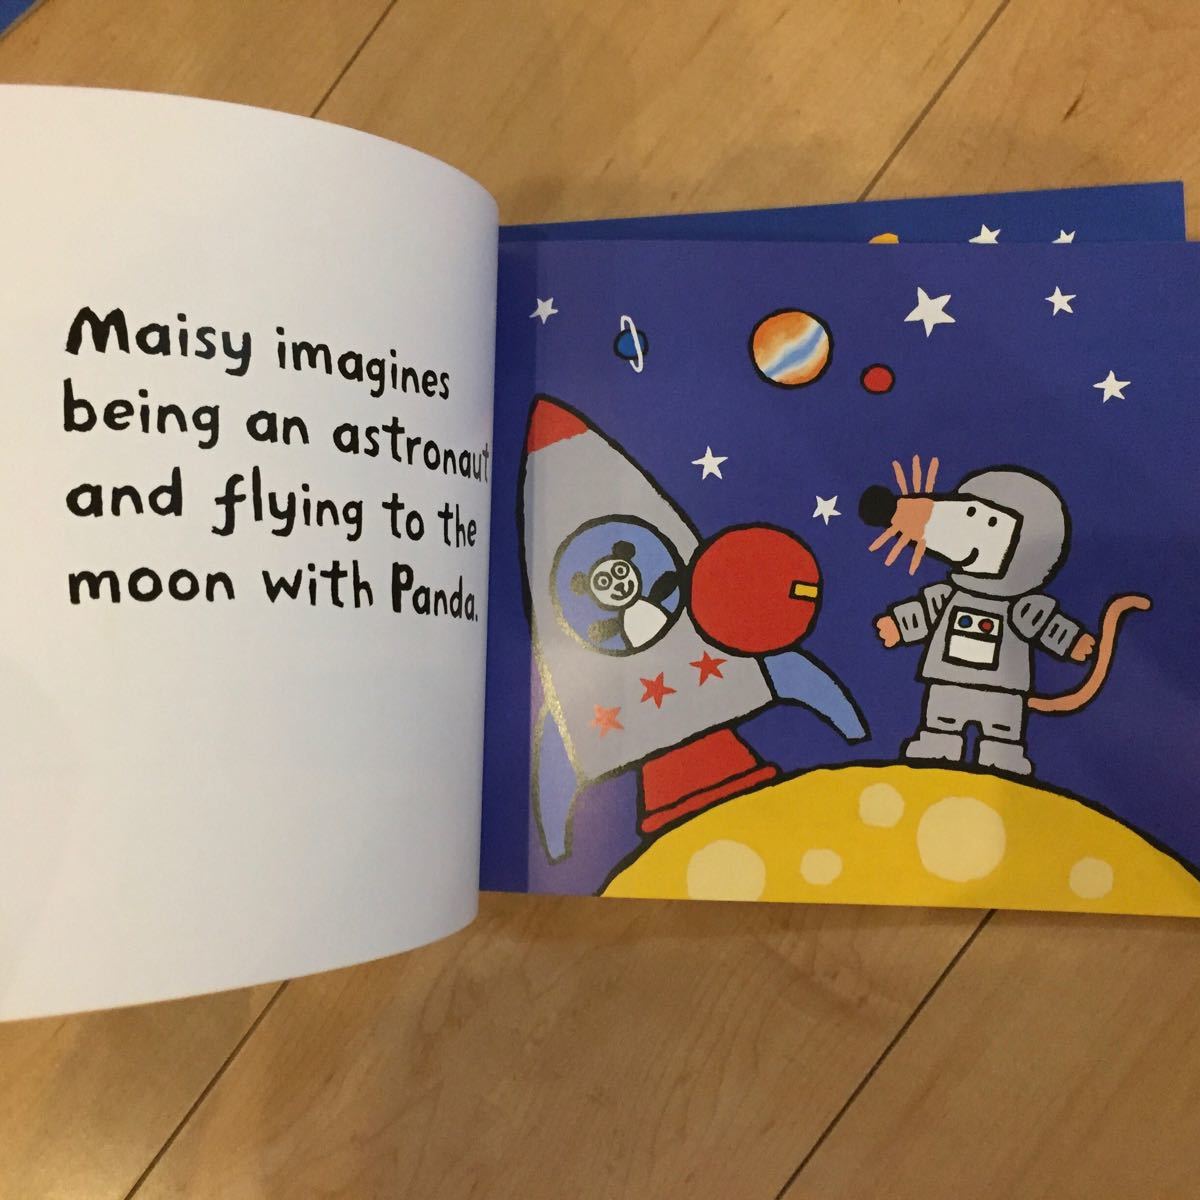 Maisy メイジー はじめてのシリーズ 6冊 セット 英語絵本